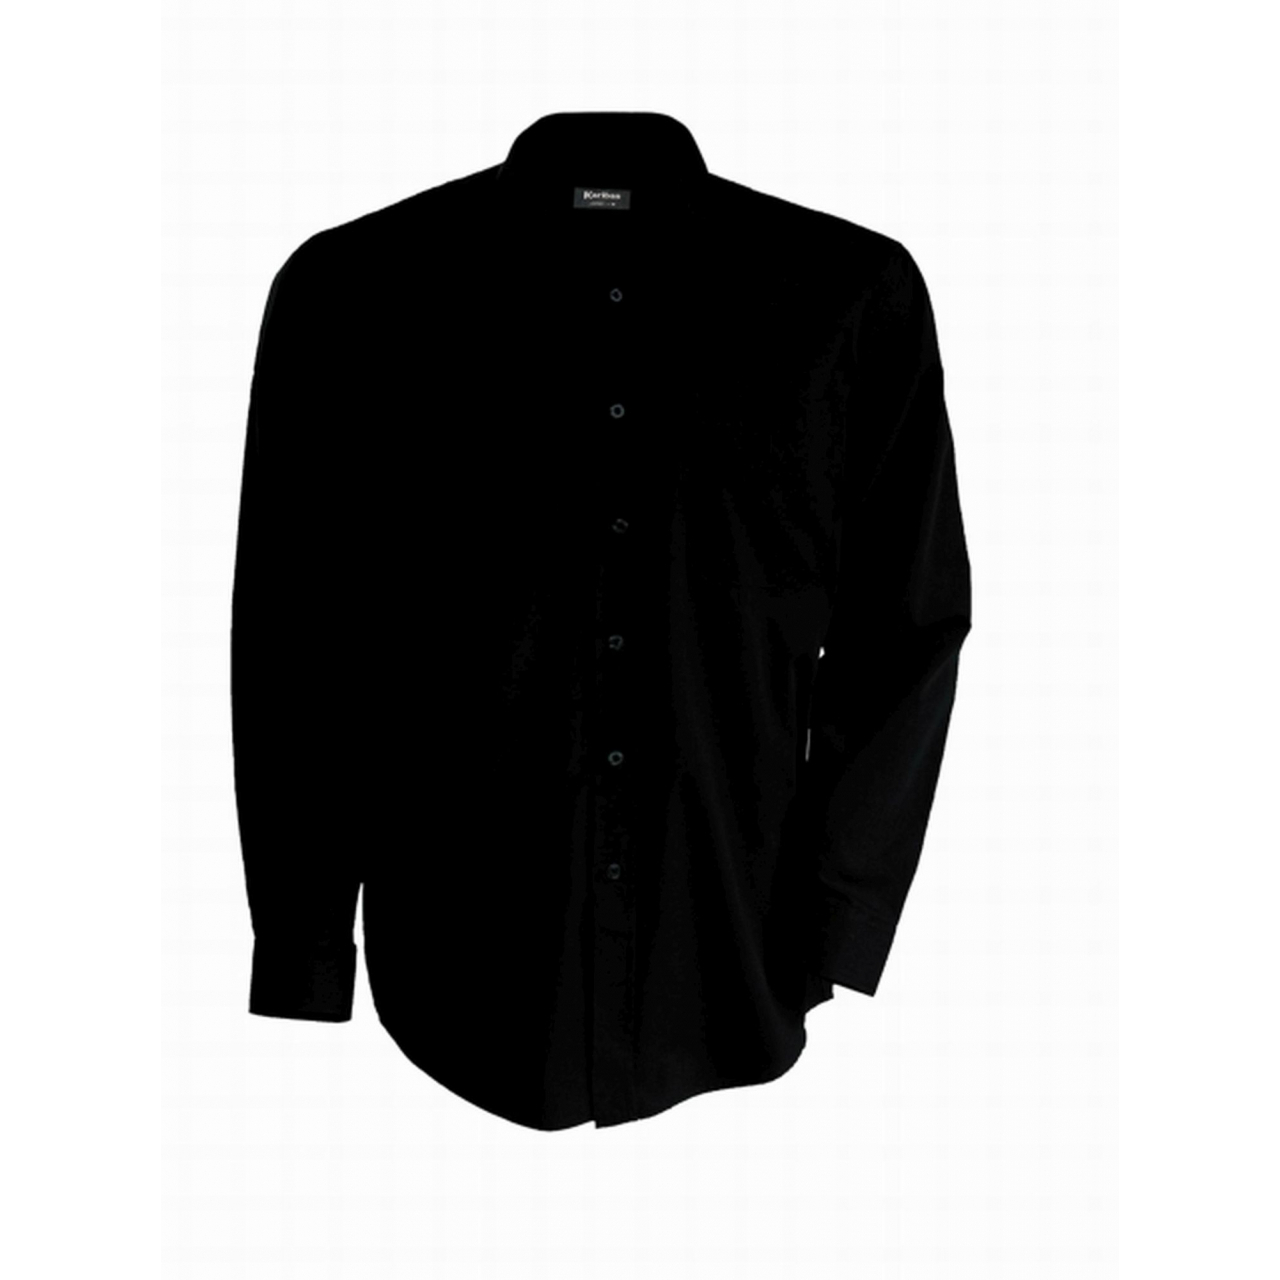 Pánská košile Kariban dlouhý rukáv v nežehlivé úpravě - černá, L